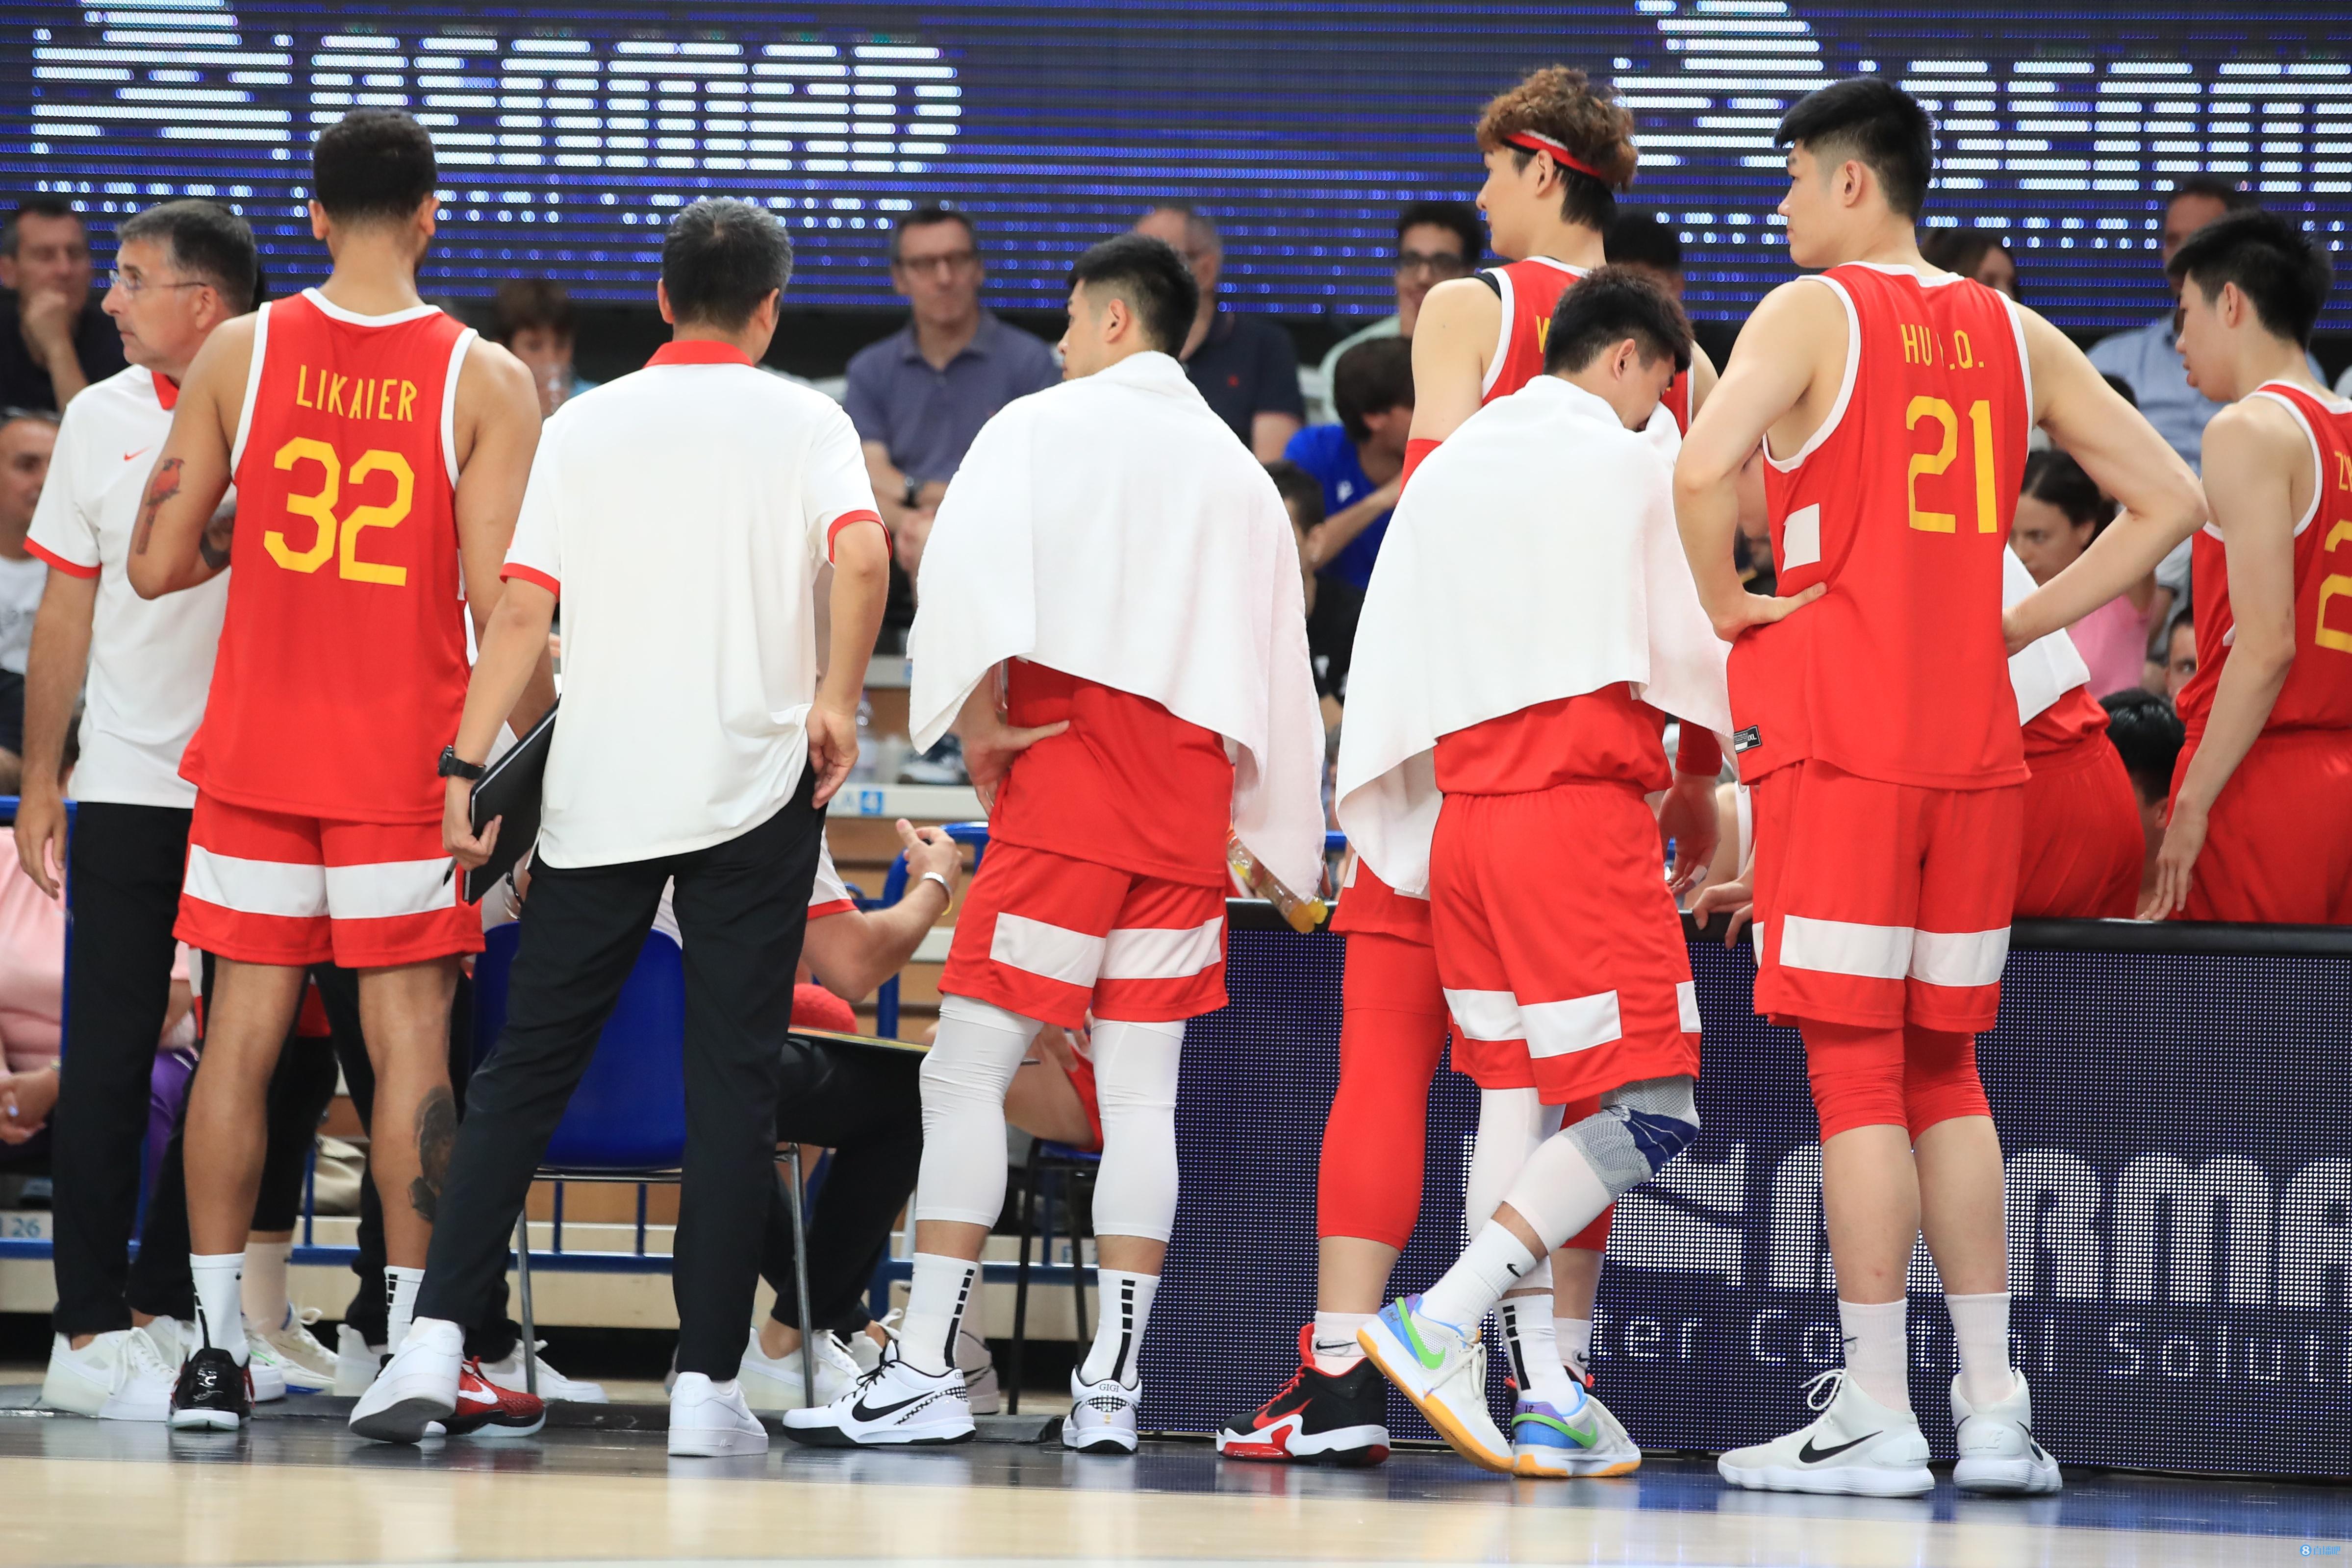 中国男篮三分/罚球命中率28.6%/8.3% 对手46.4%/85.7%